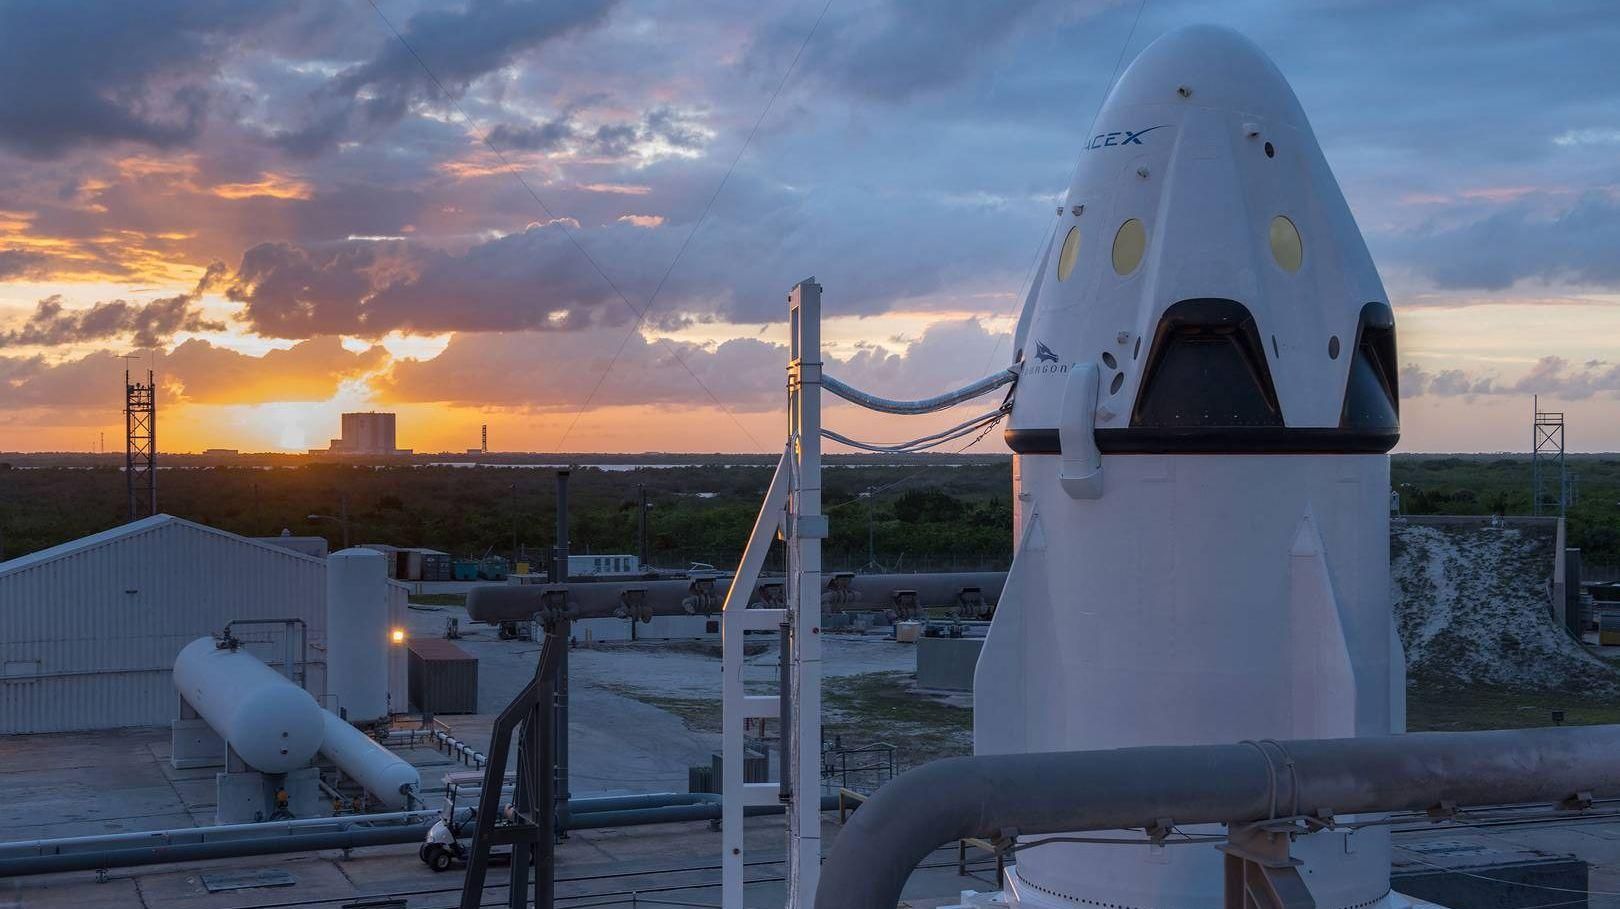 Капсула SpaceX Crew Dragon після аварії могла згоріти вщент